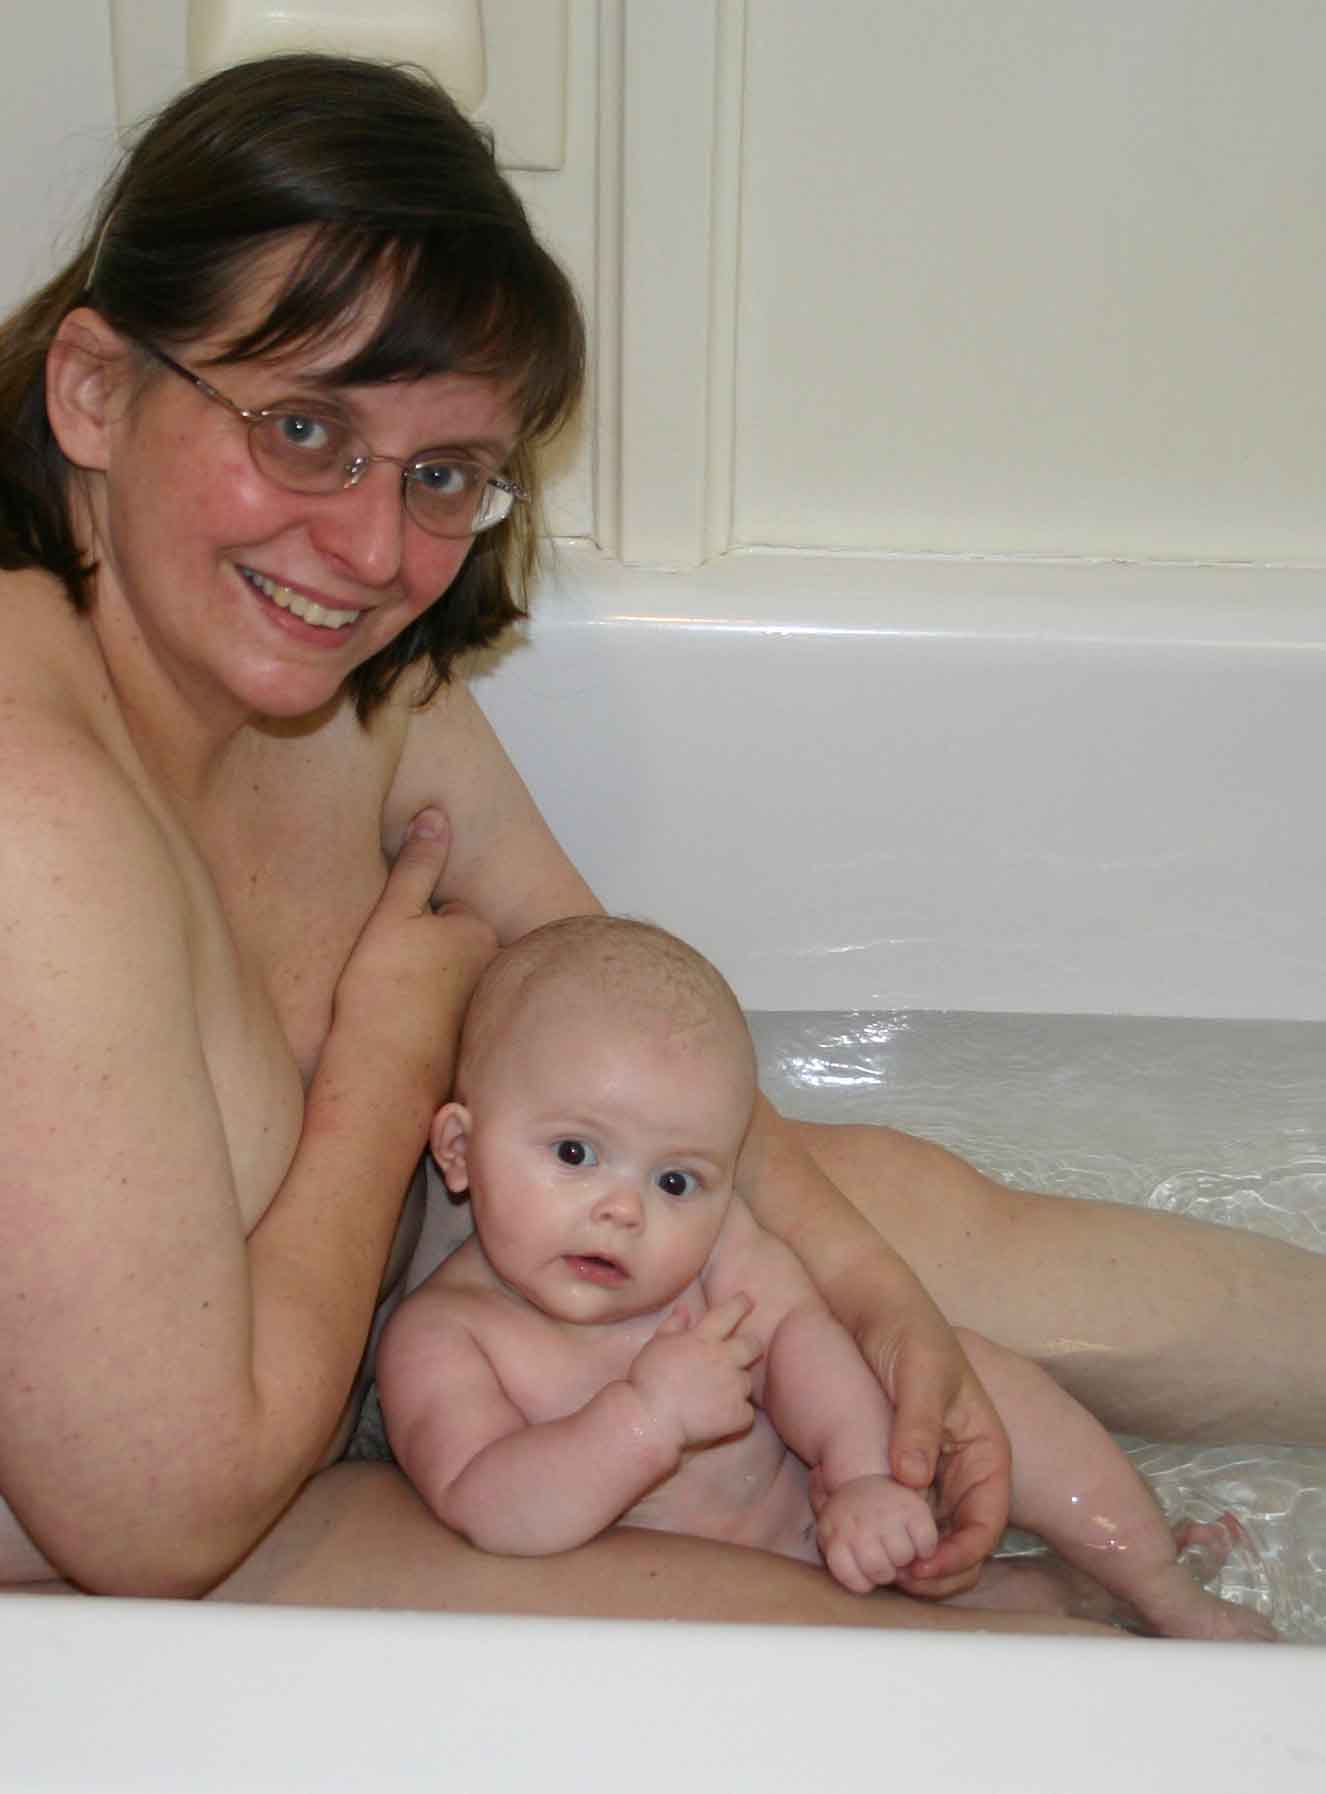 Bathing mom